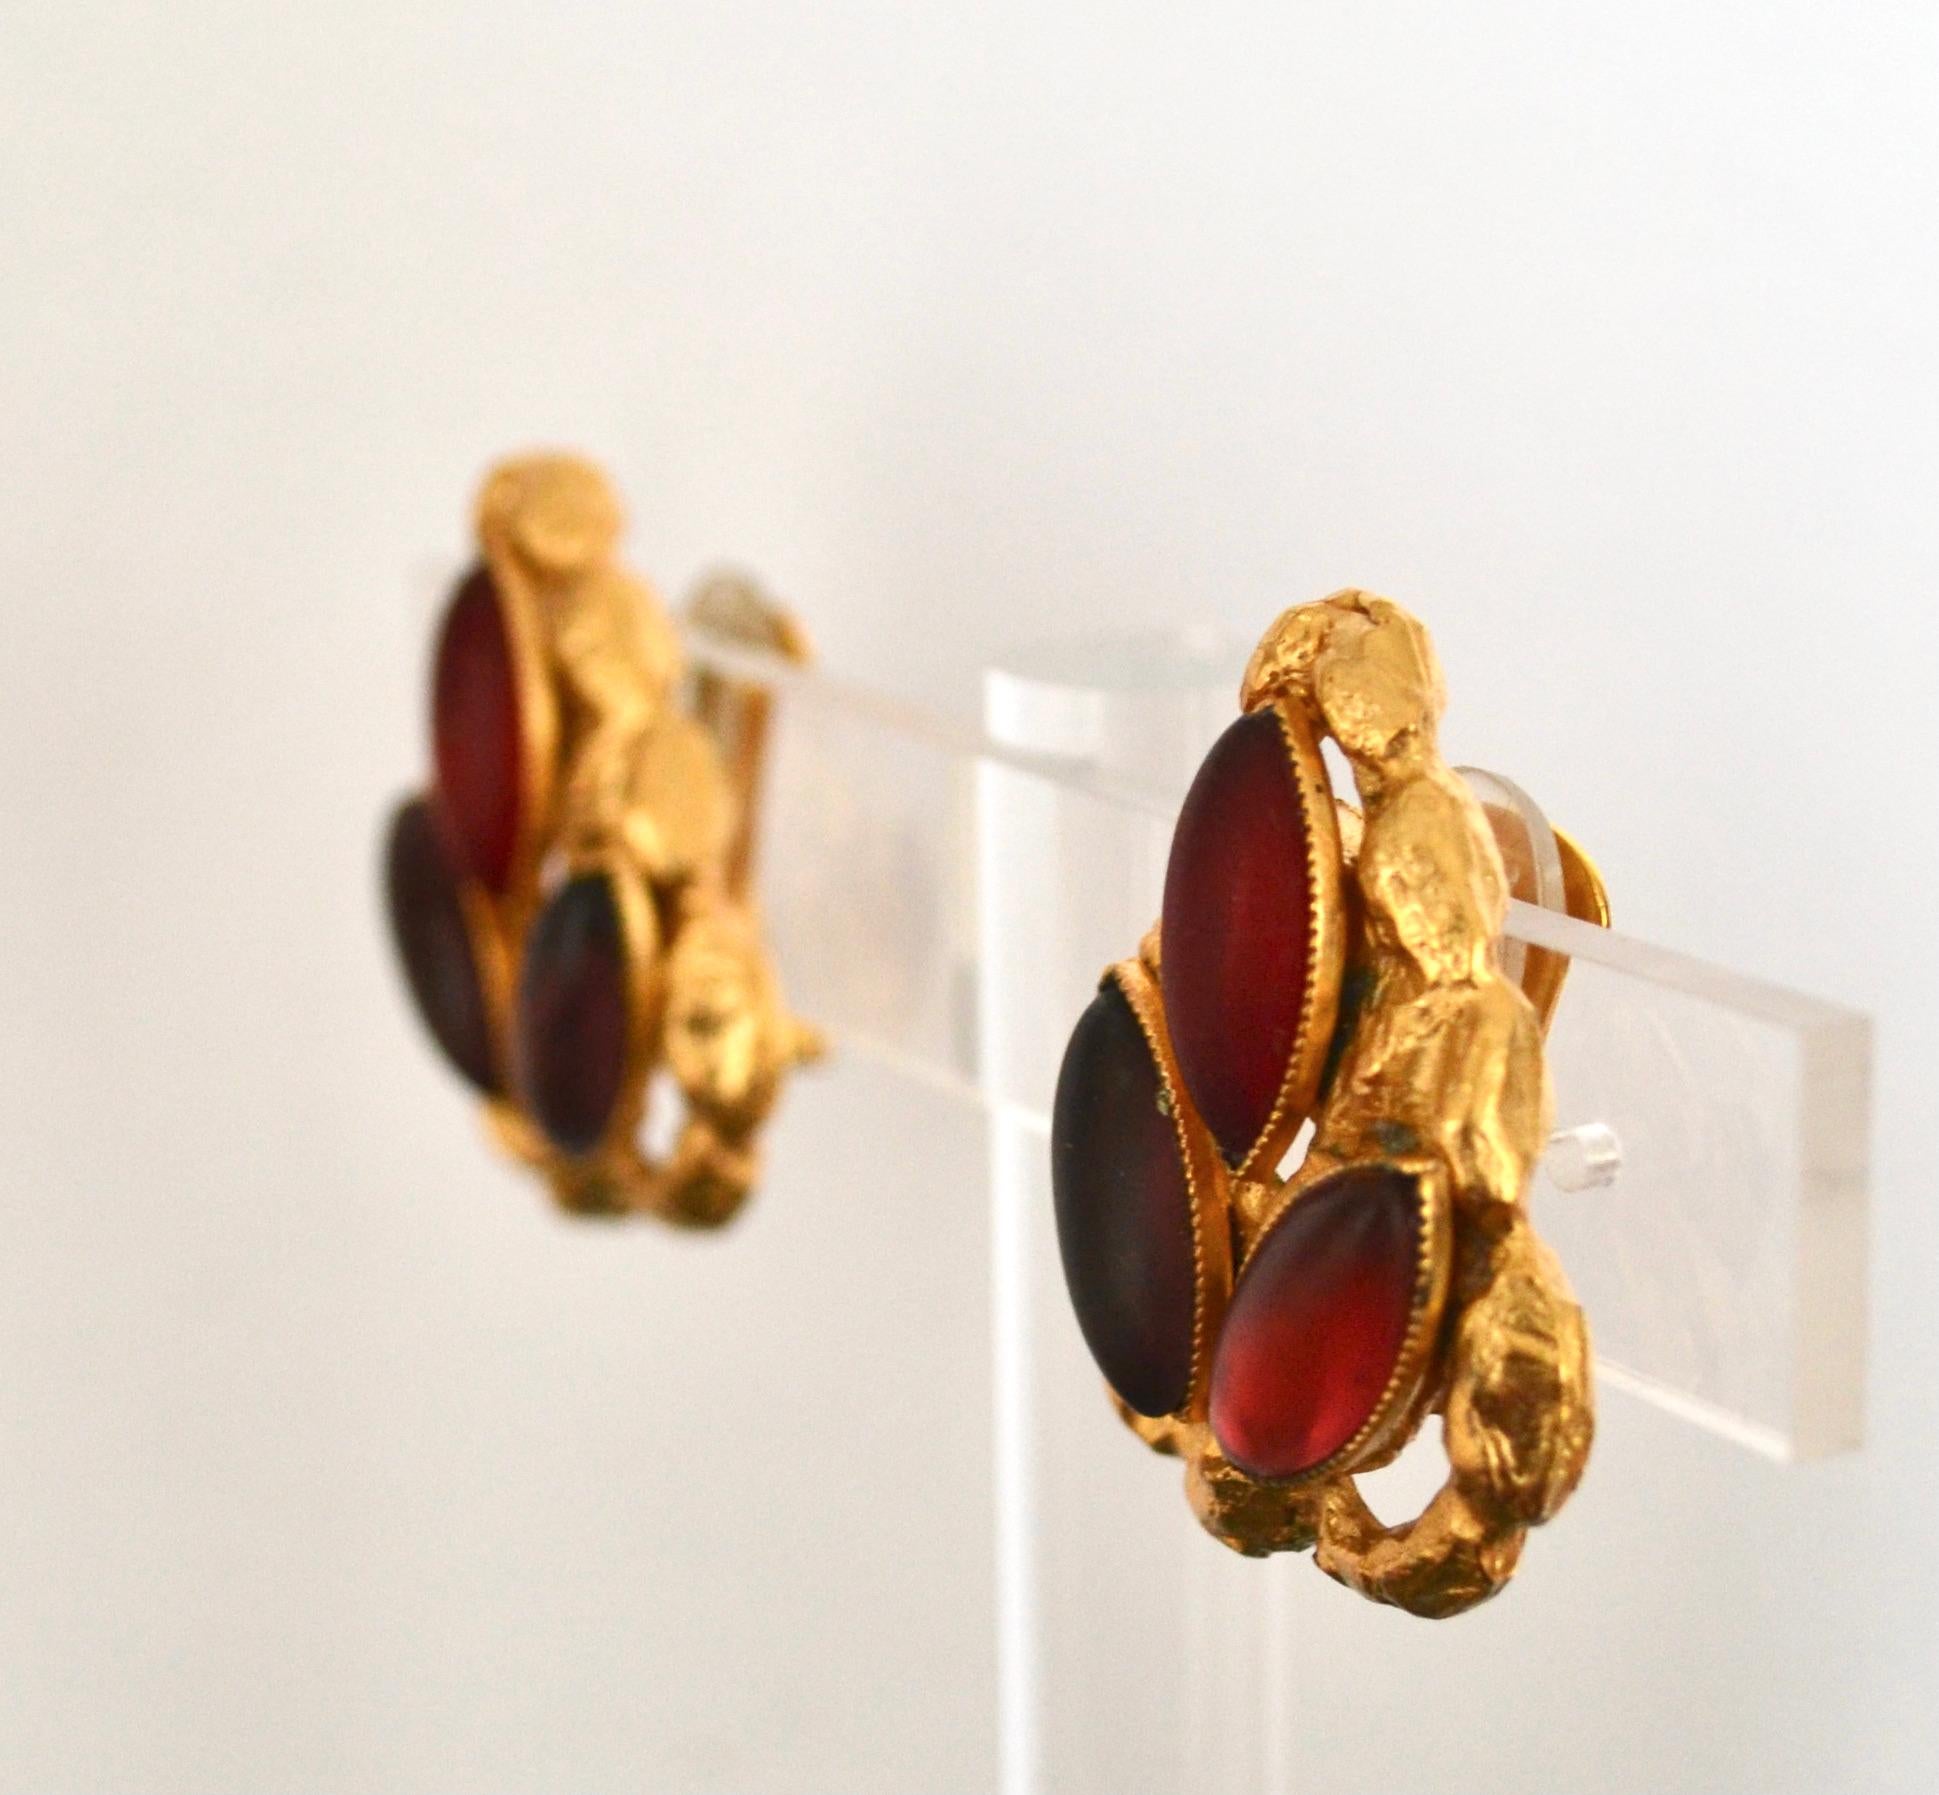 Herz-Ohrringe mit rosa und lila Steinen auf gehämmertem, vergoldetem Metall von der französischen Designerin Carole St Germes.